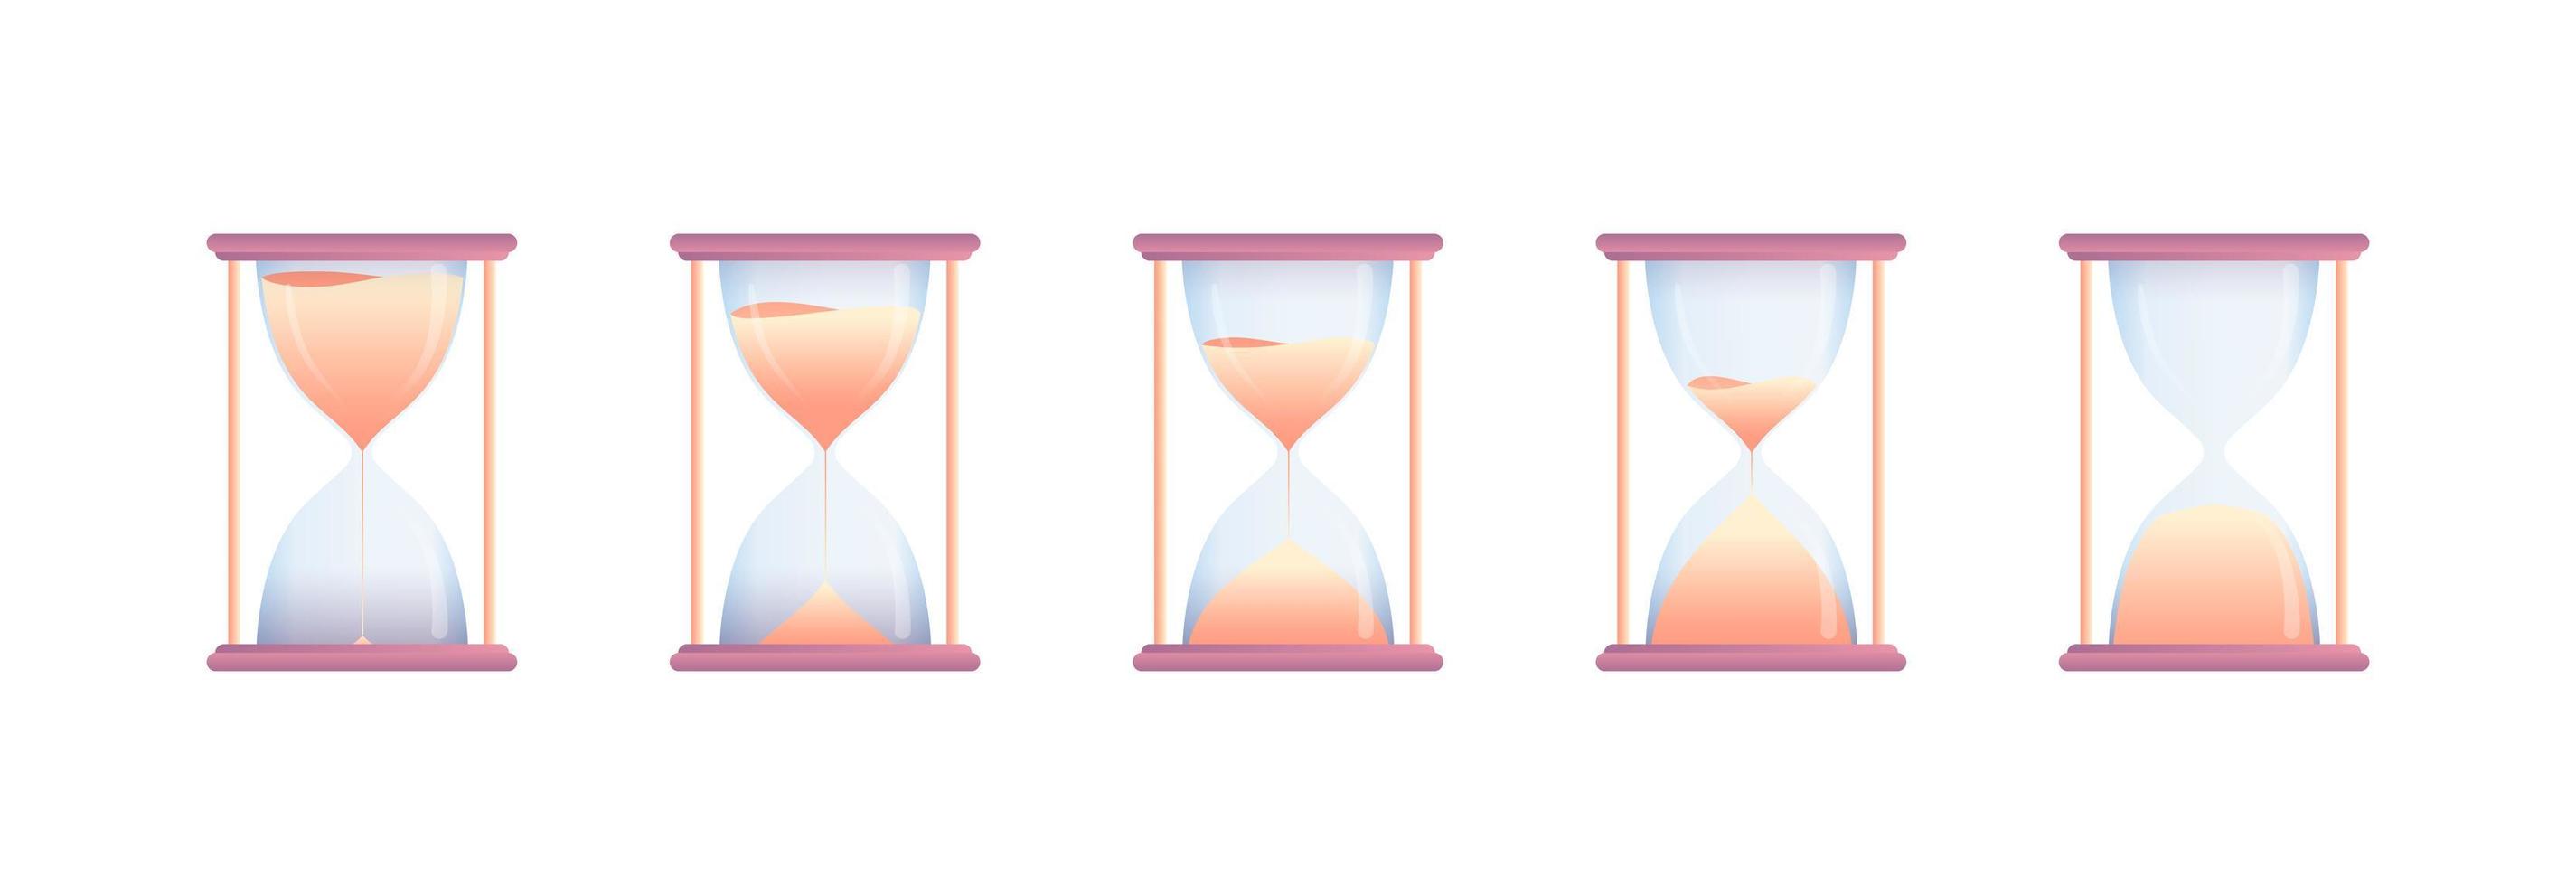 uppsättning timglas i olika stadier nedräkning vektor